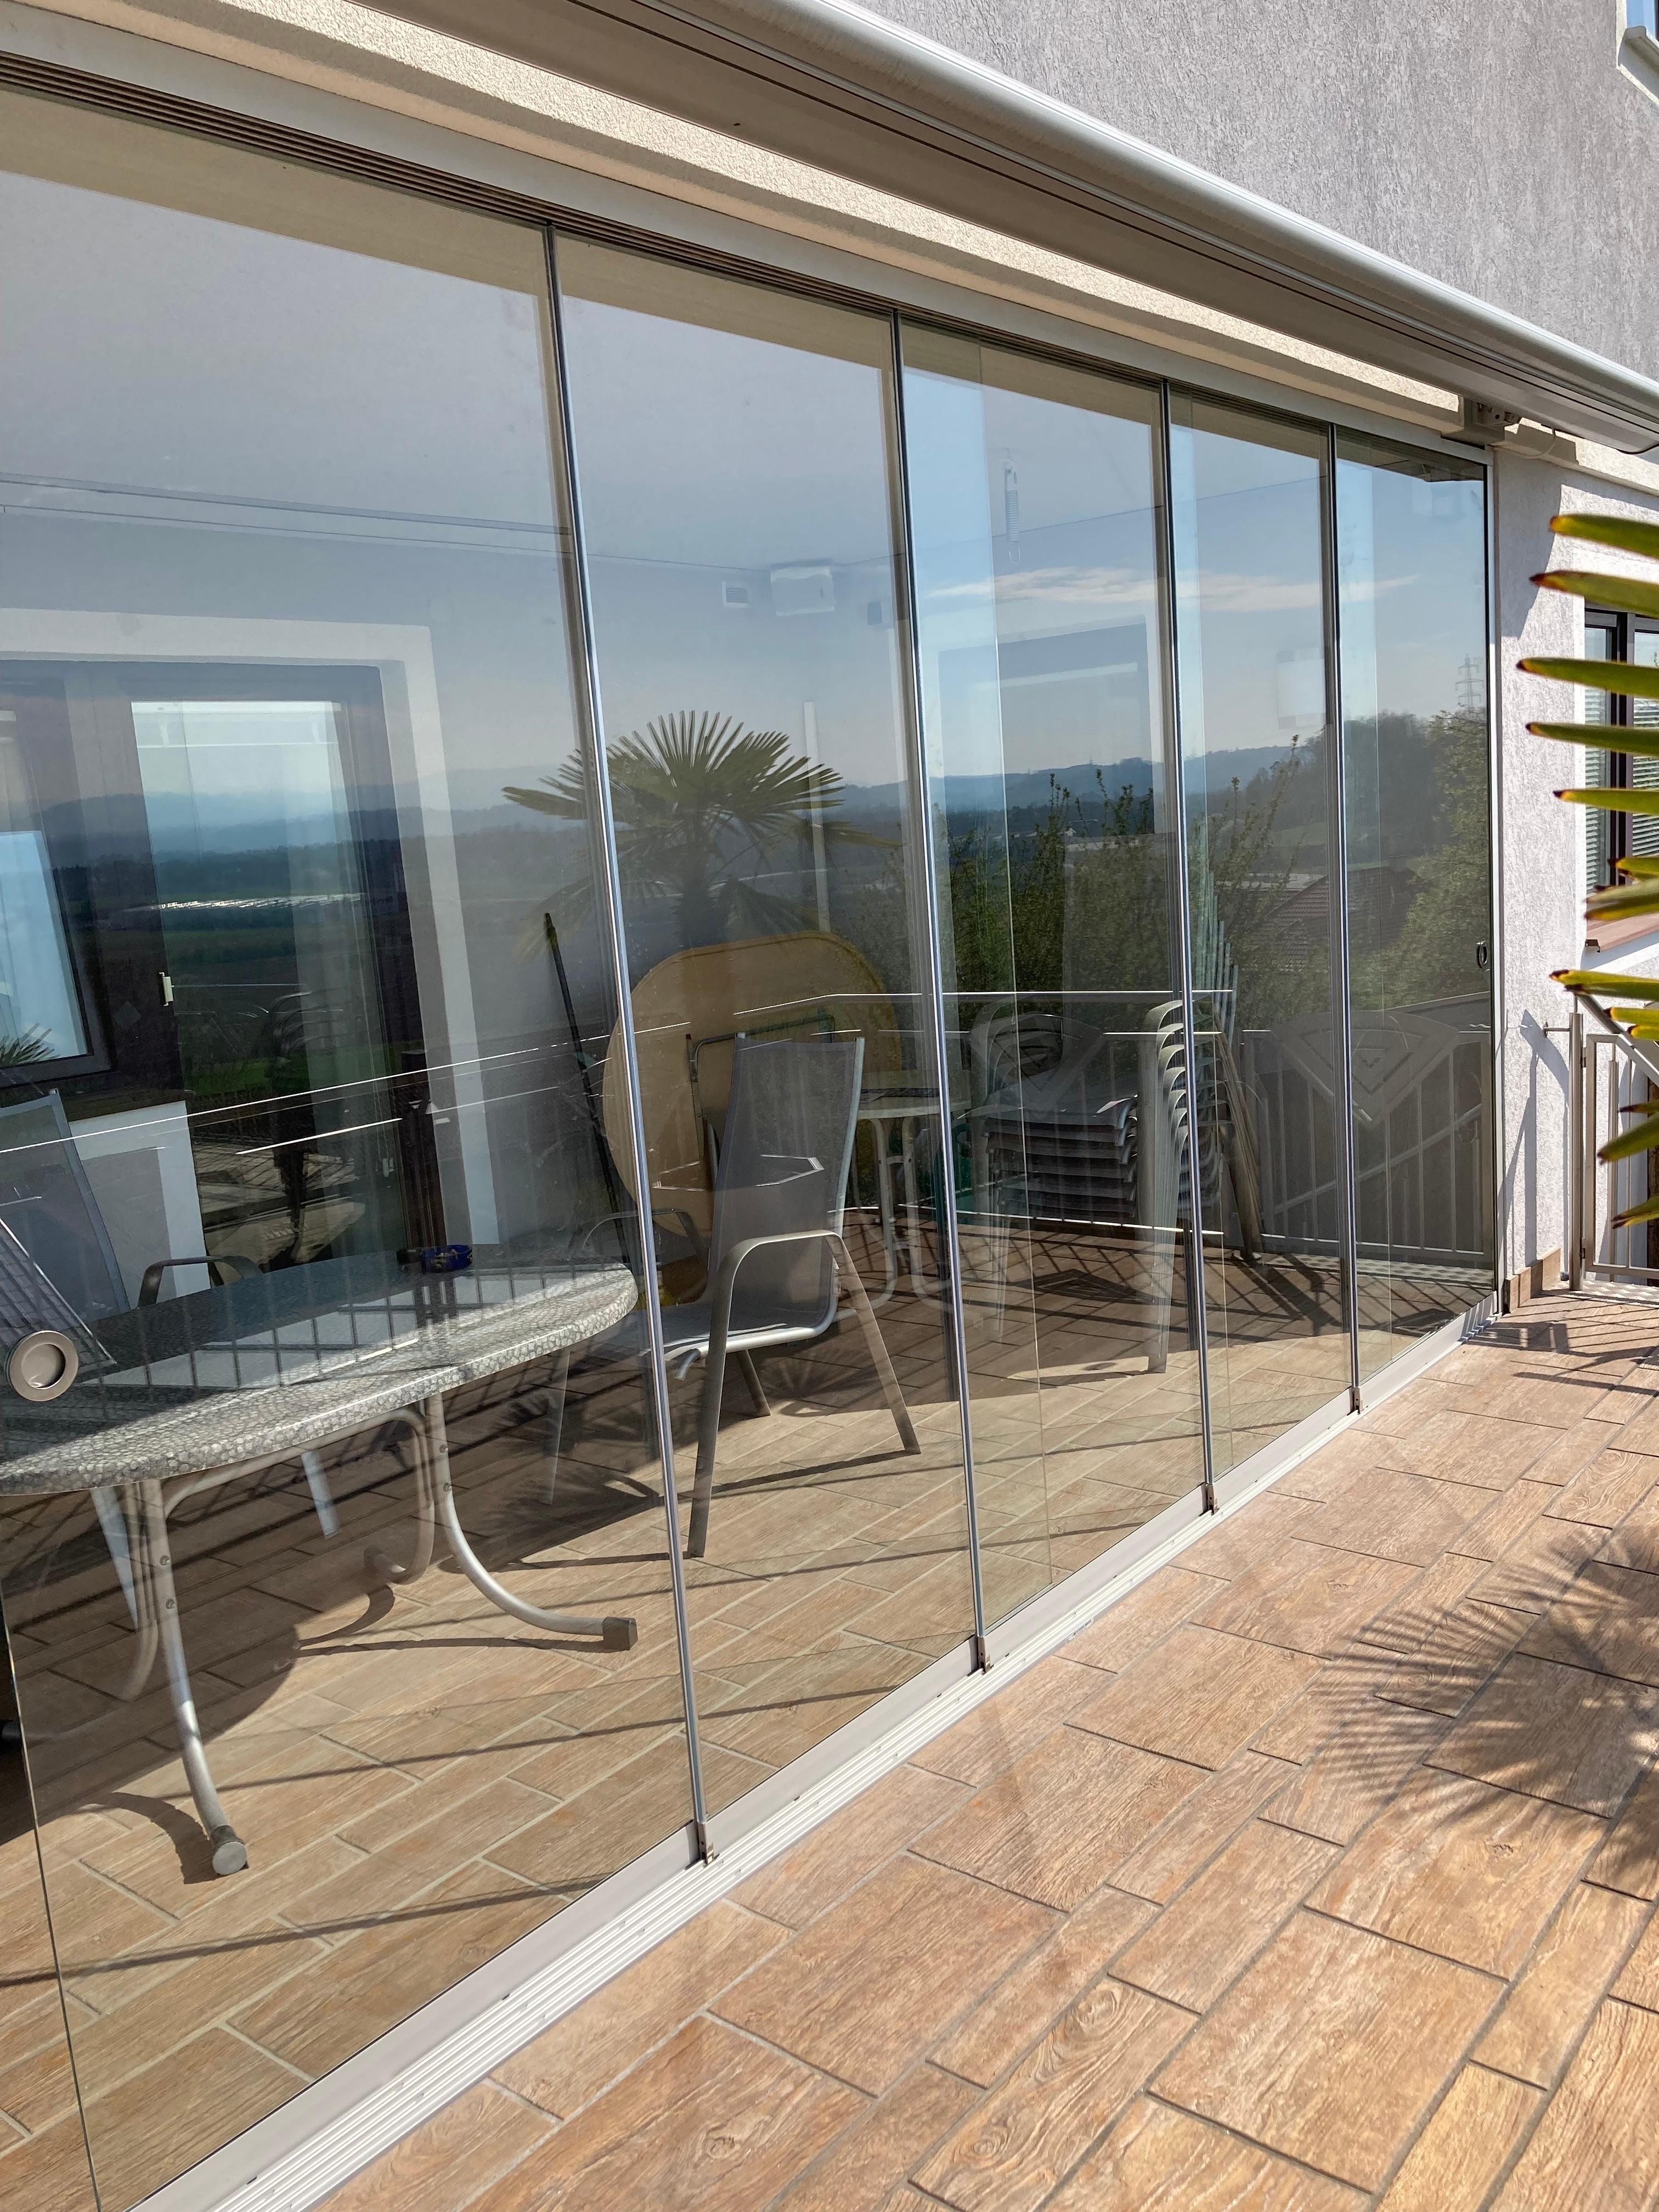 Dank der Terrassenverglasung zum Schieben bleibt es in der Übergangszeit schön warm und die Möbel sind perfekt geschützt